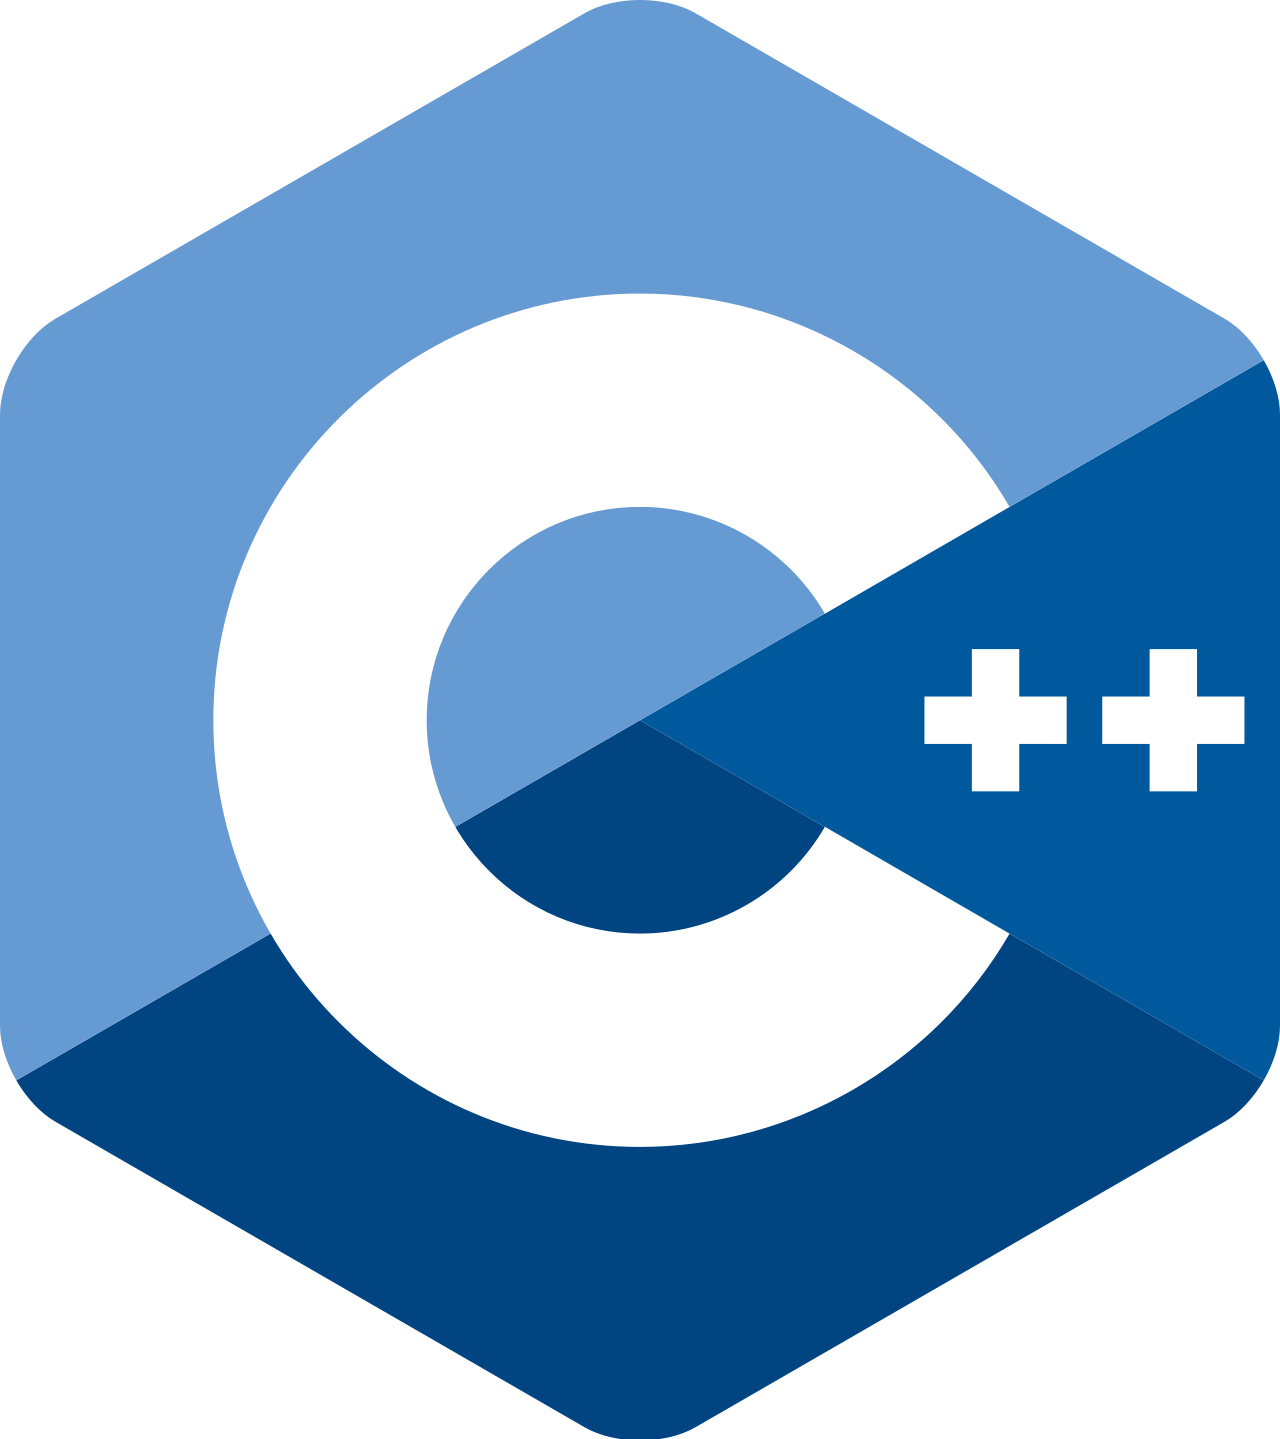 C++23 logo